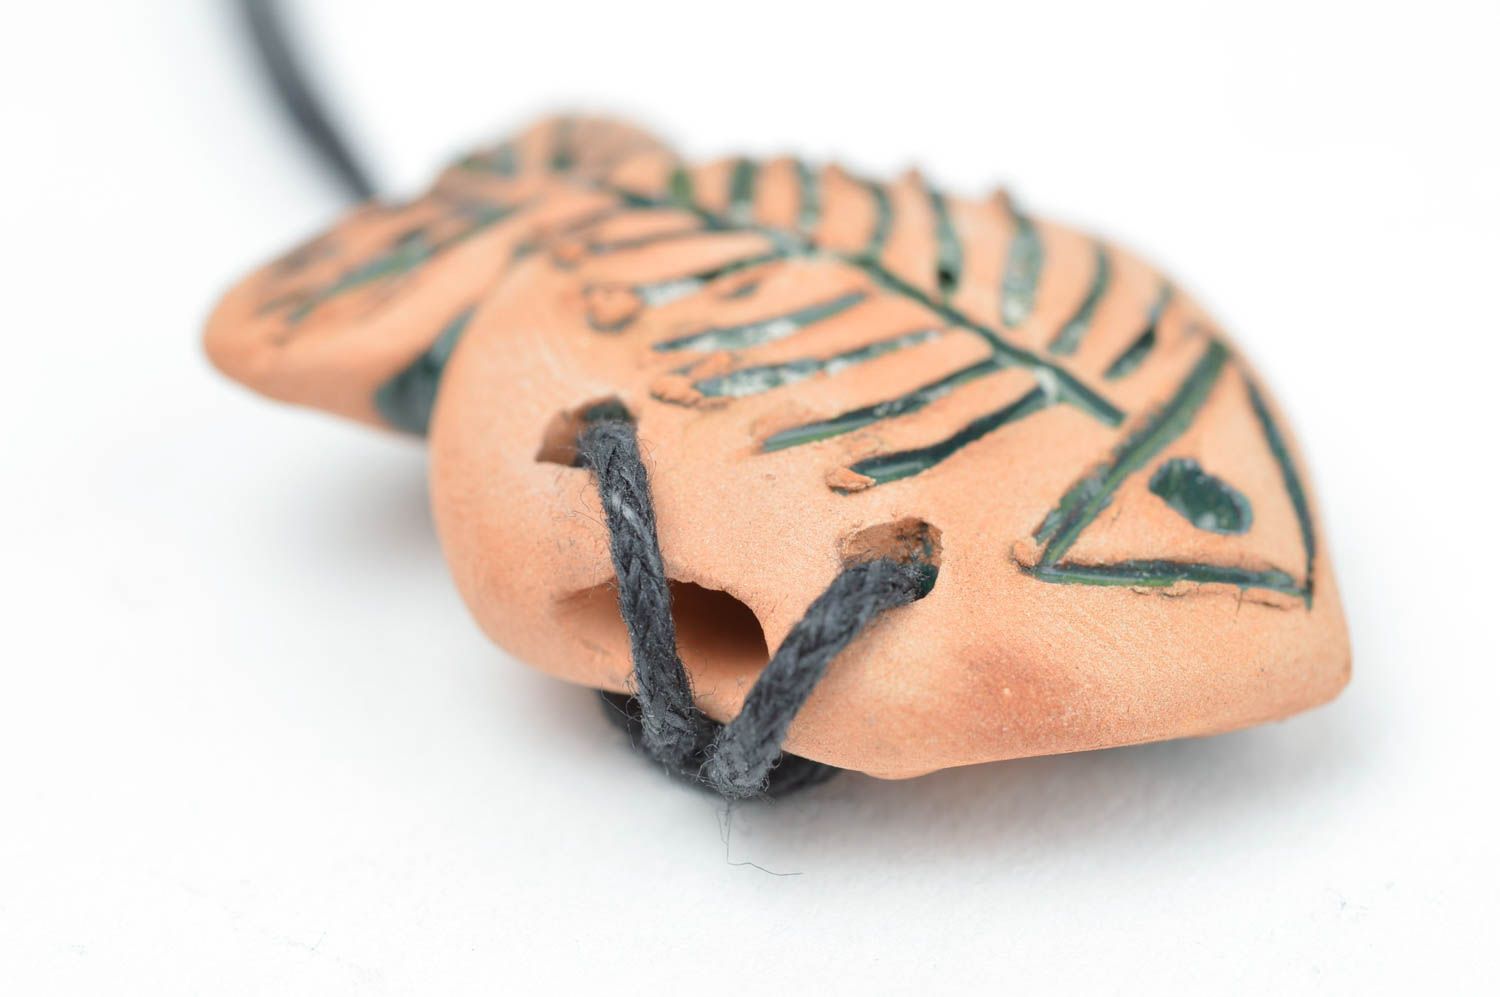 Handmade clay pendant ceramic pendant for essential oils aroma pendant photo 3